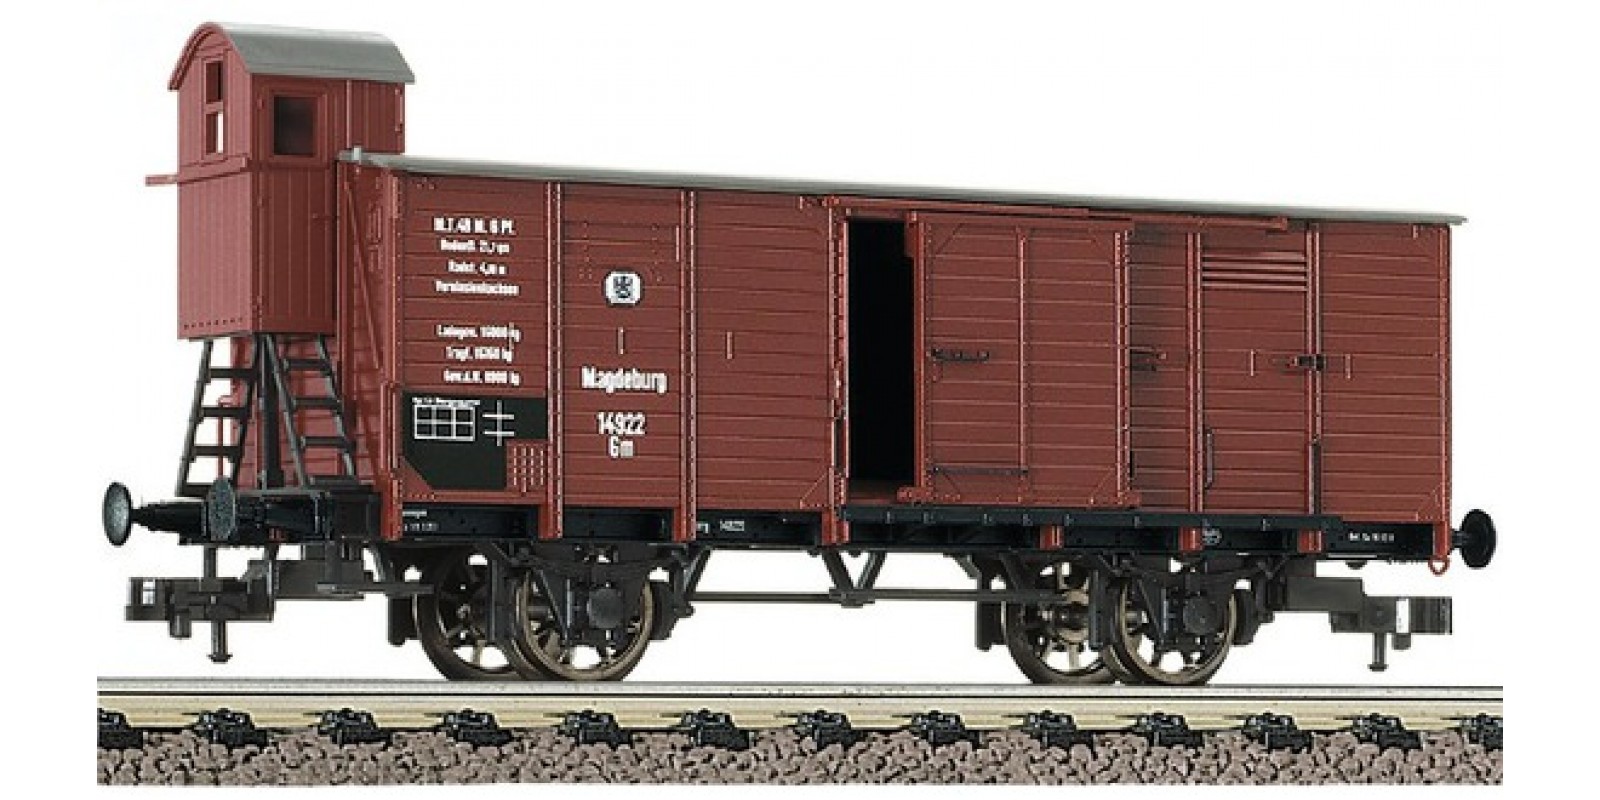 FL536601 - Boxcar type G 02 "Stettin", K.P.E.V.